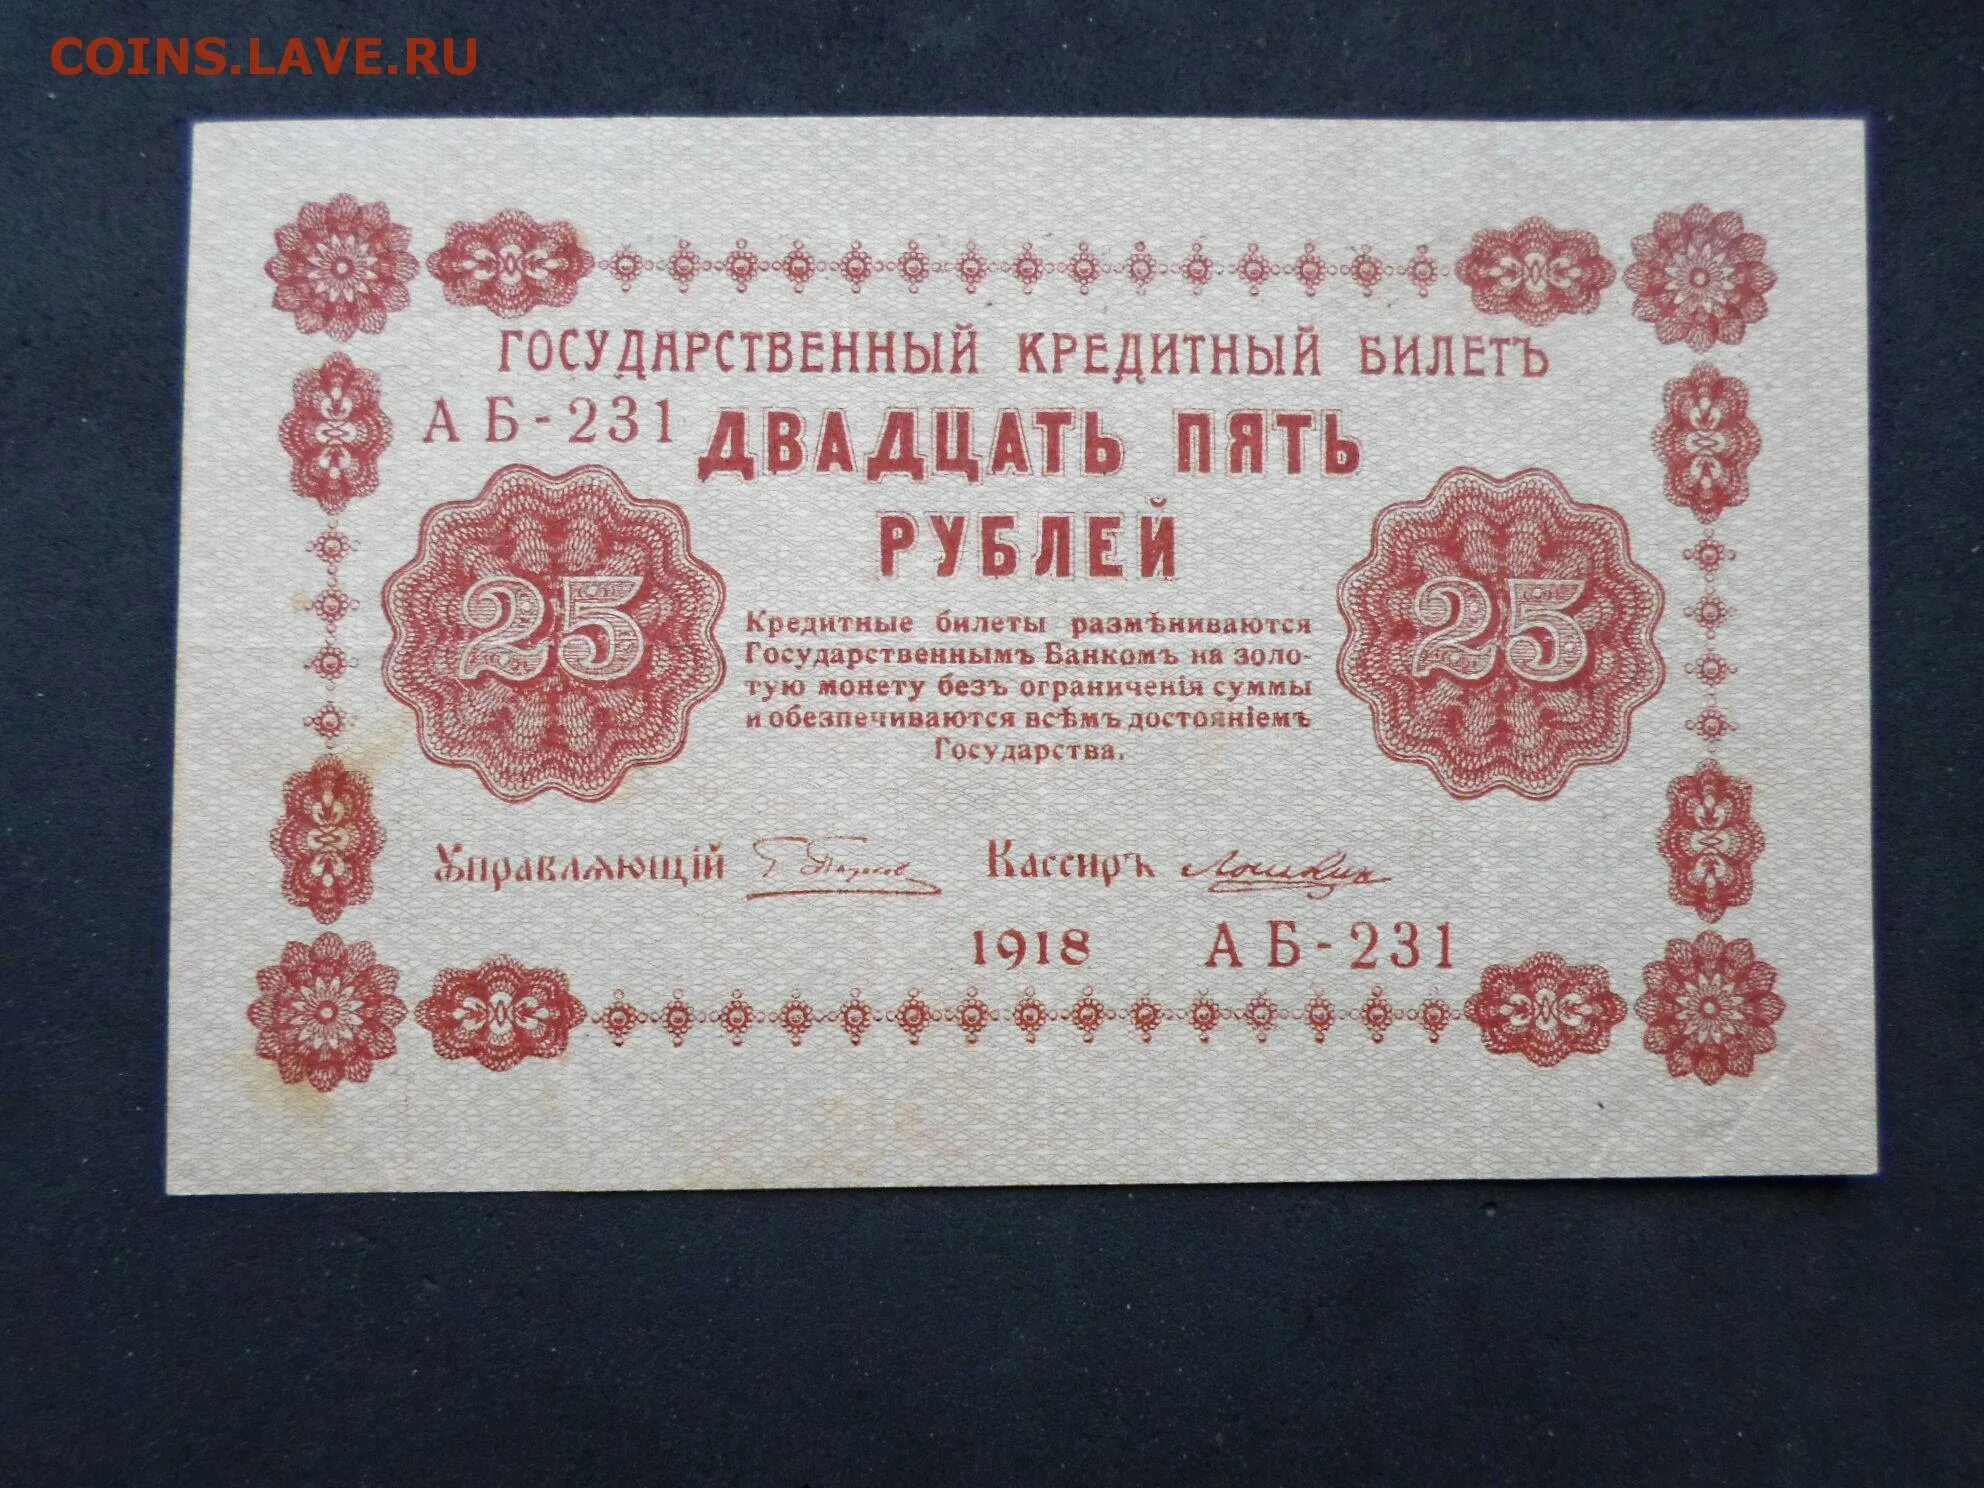 25 Рублей 1918 года. 1000 Рублей 1918 года. Государственный кредитный билет 25 рублей 1918. 5 Тысяч рублей 1918 года.